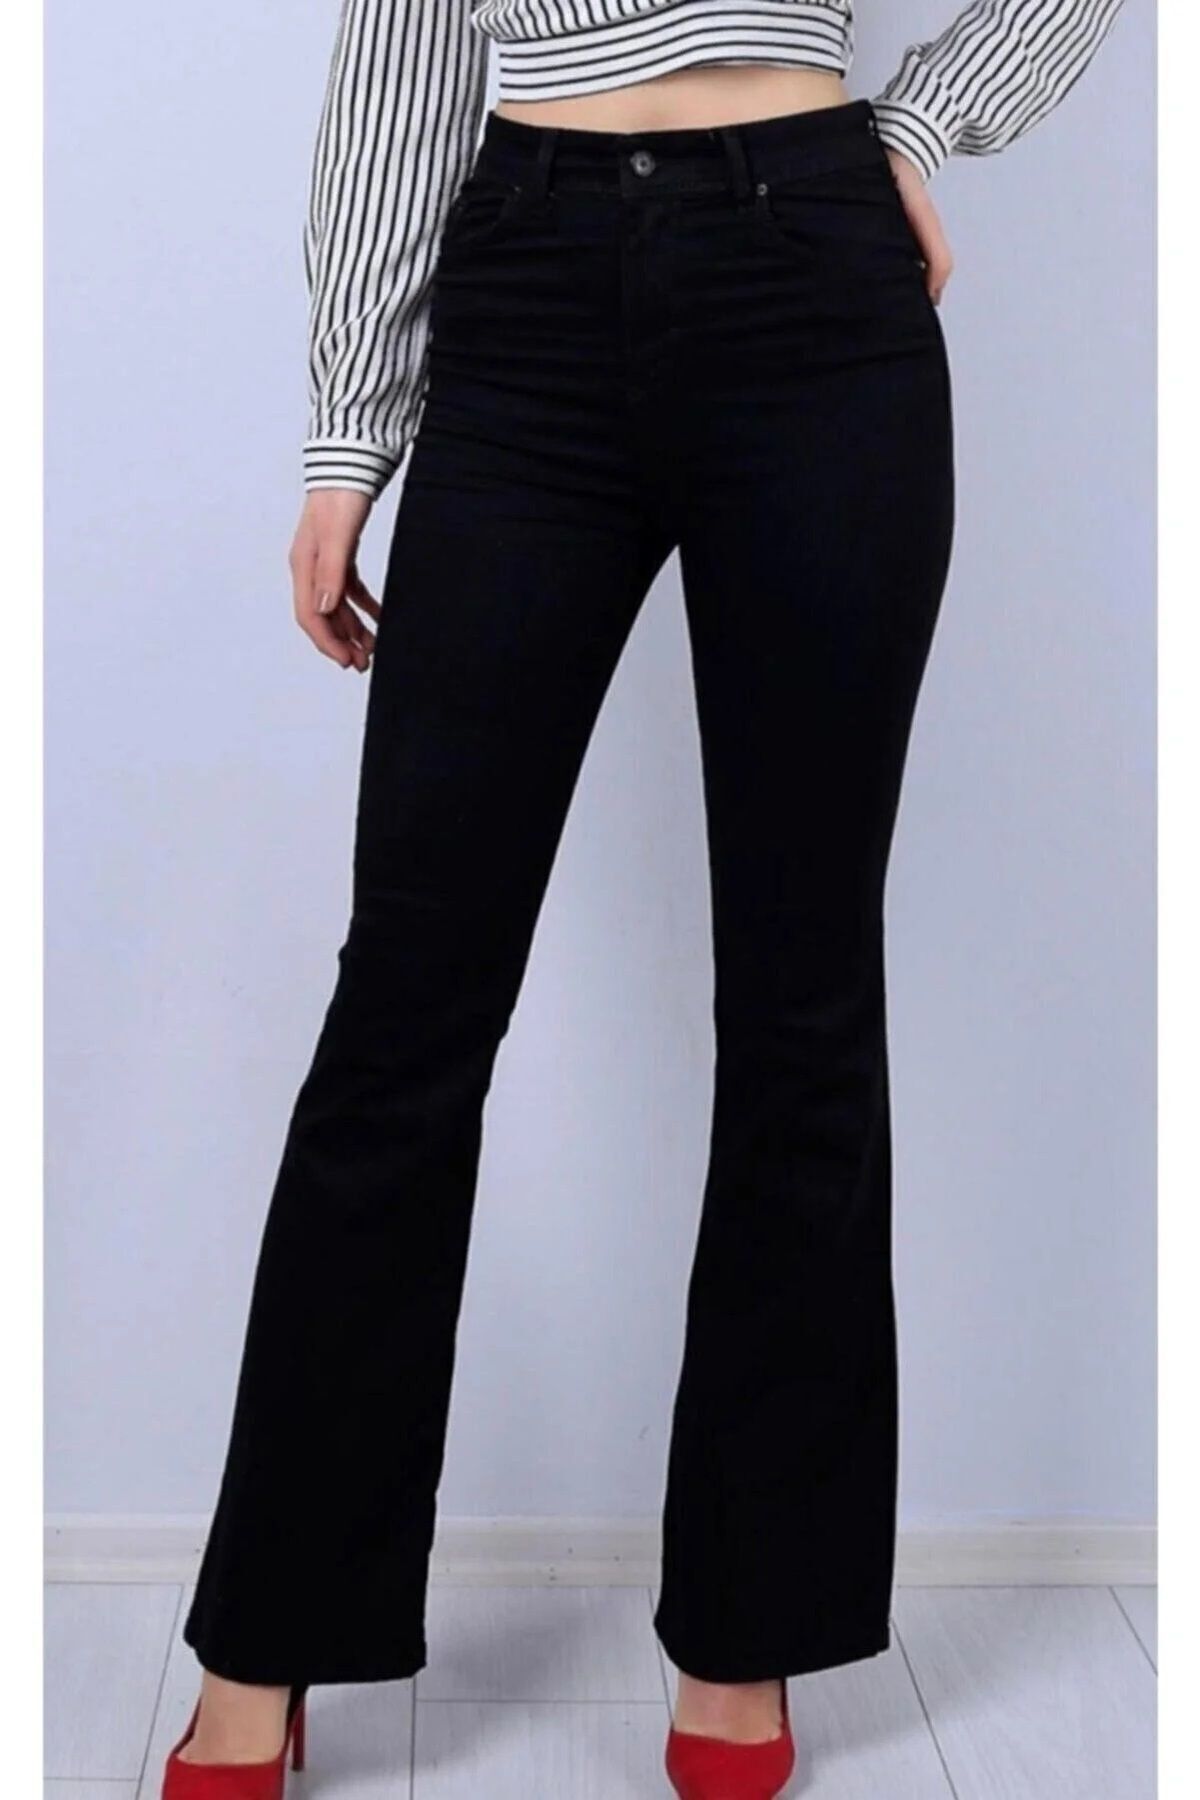 TRENDNATUREL Golden Black Yüksek Bel Likralı Simsiyah Ispanyol Jeans Pantolon-beden Tablomuza Bakınız